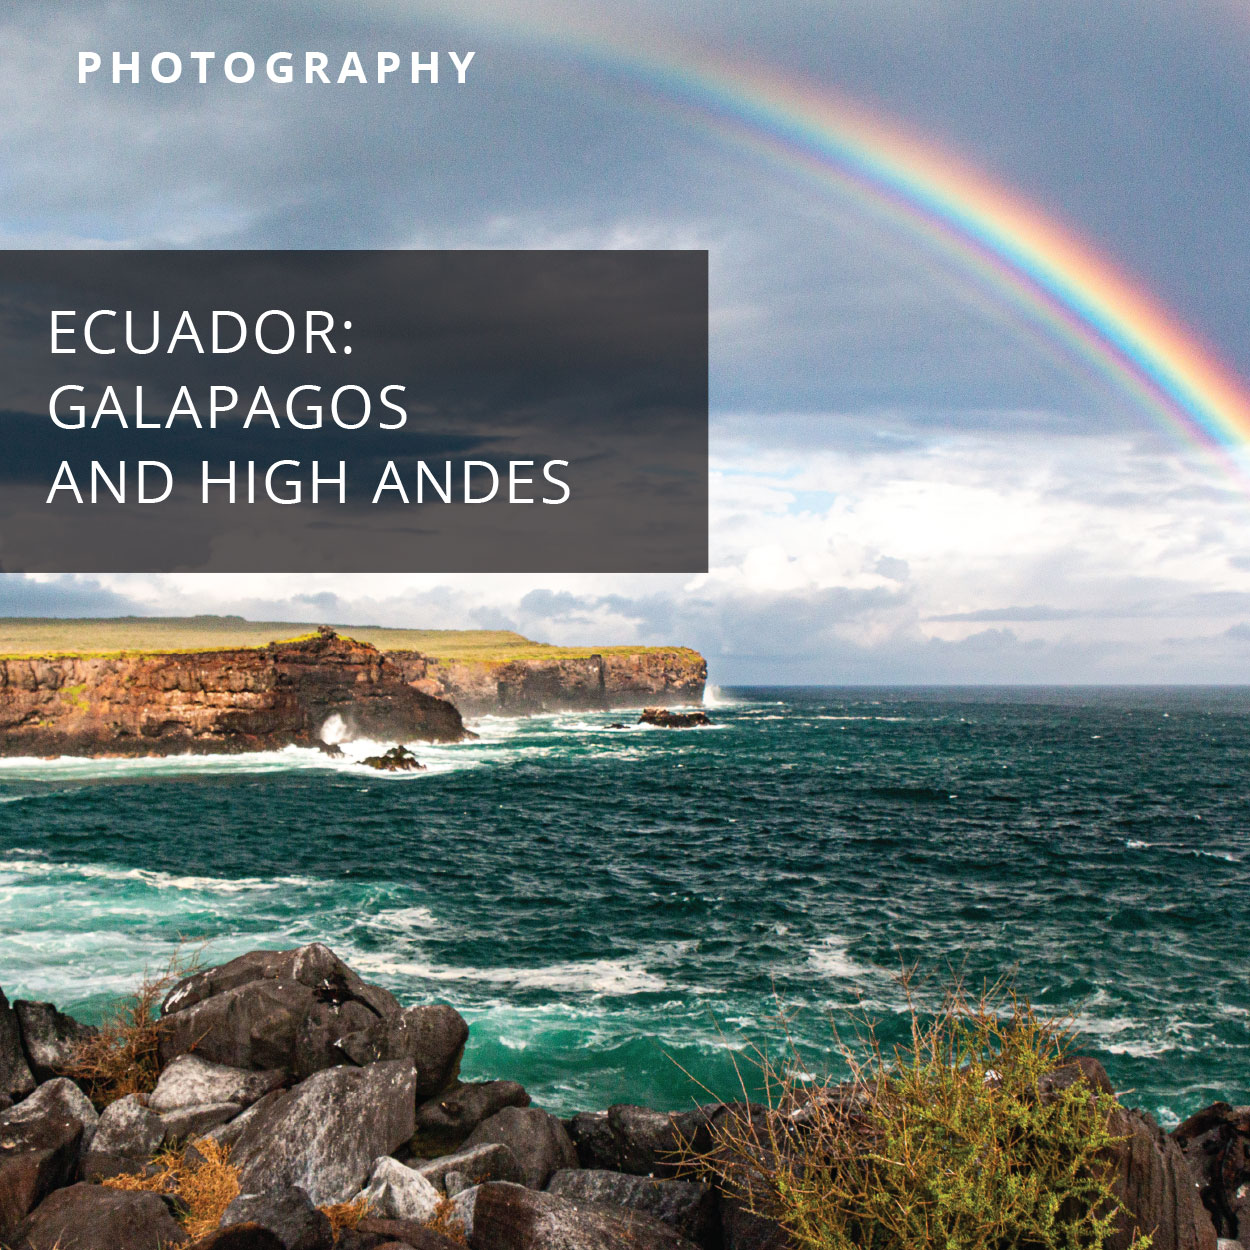 Dave Wright travel photography: Ecuador, Galapagos, and high Andes photos